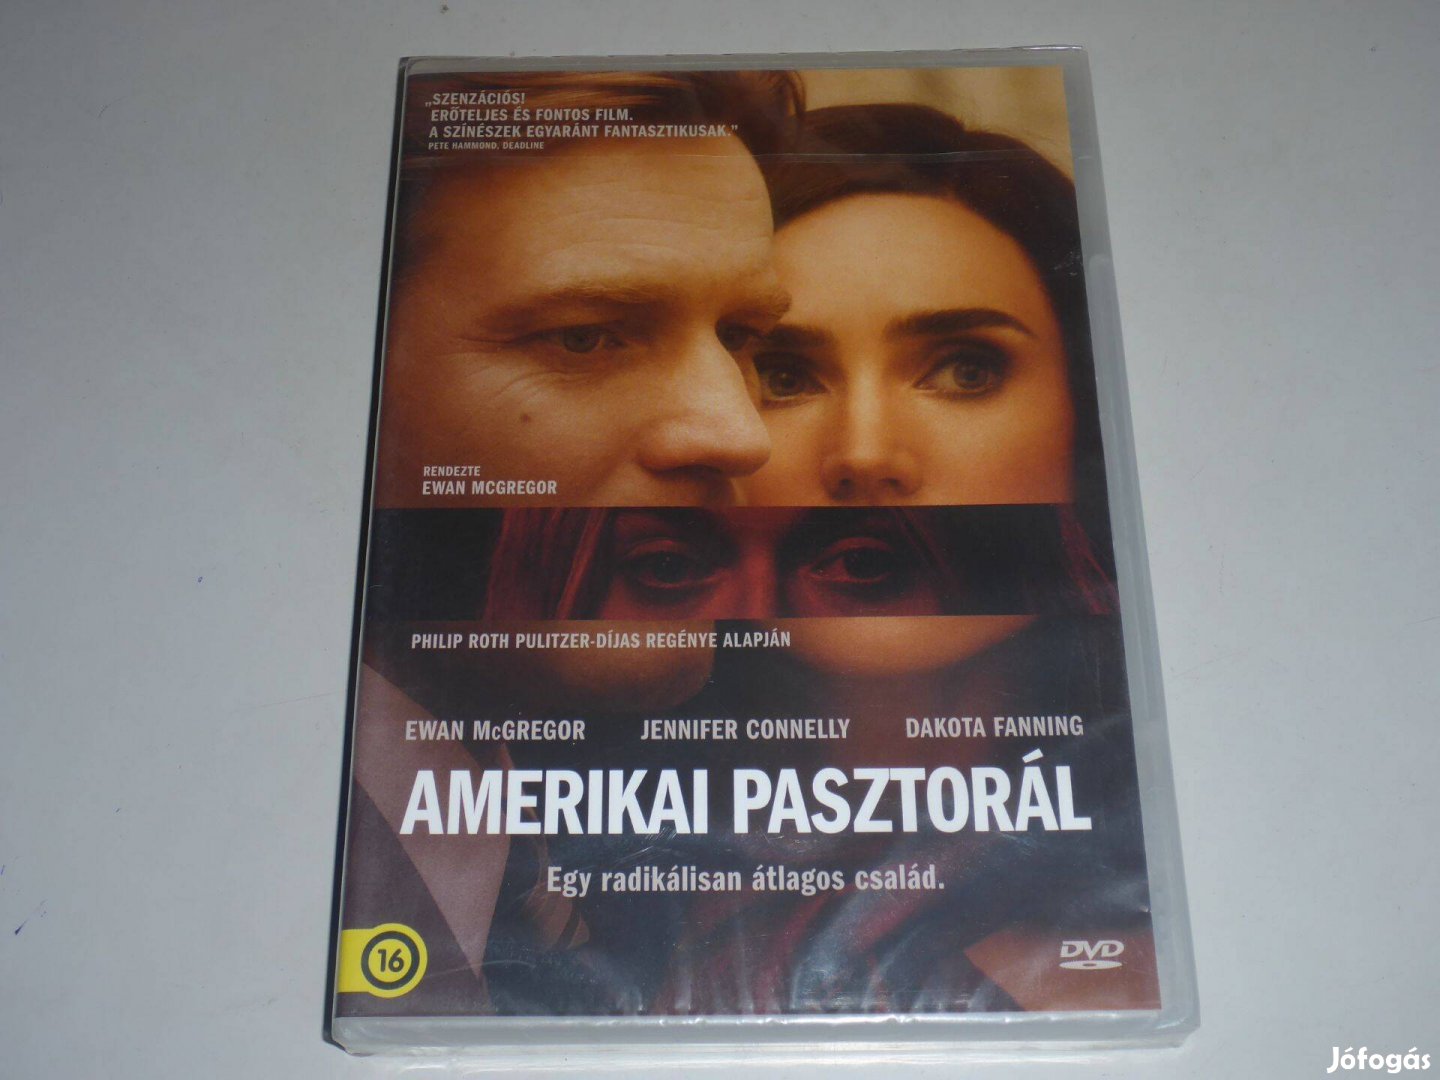 Amerikai pasztorál DVD film *